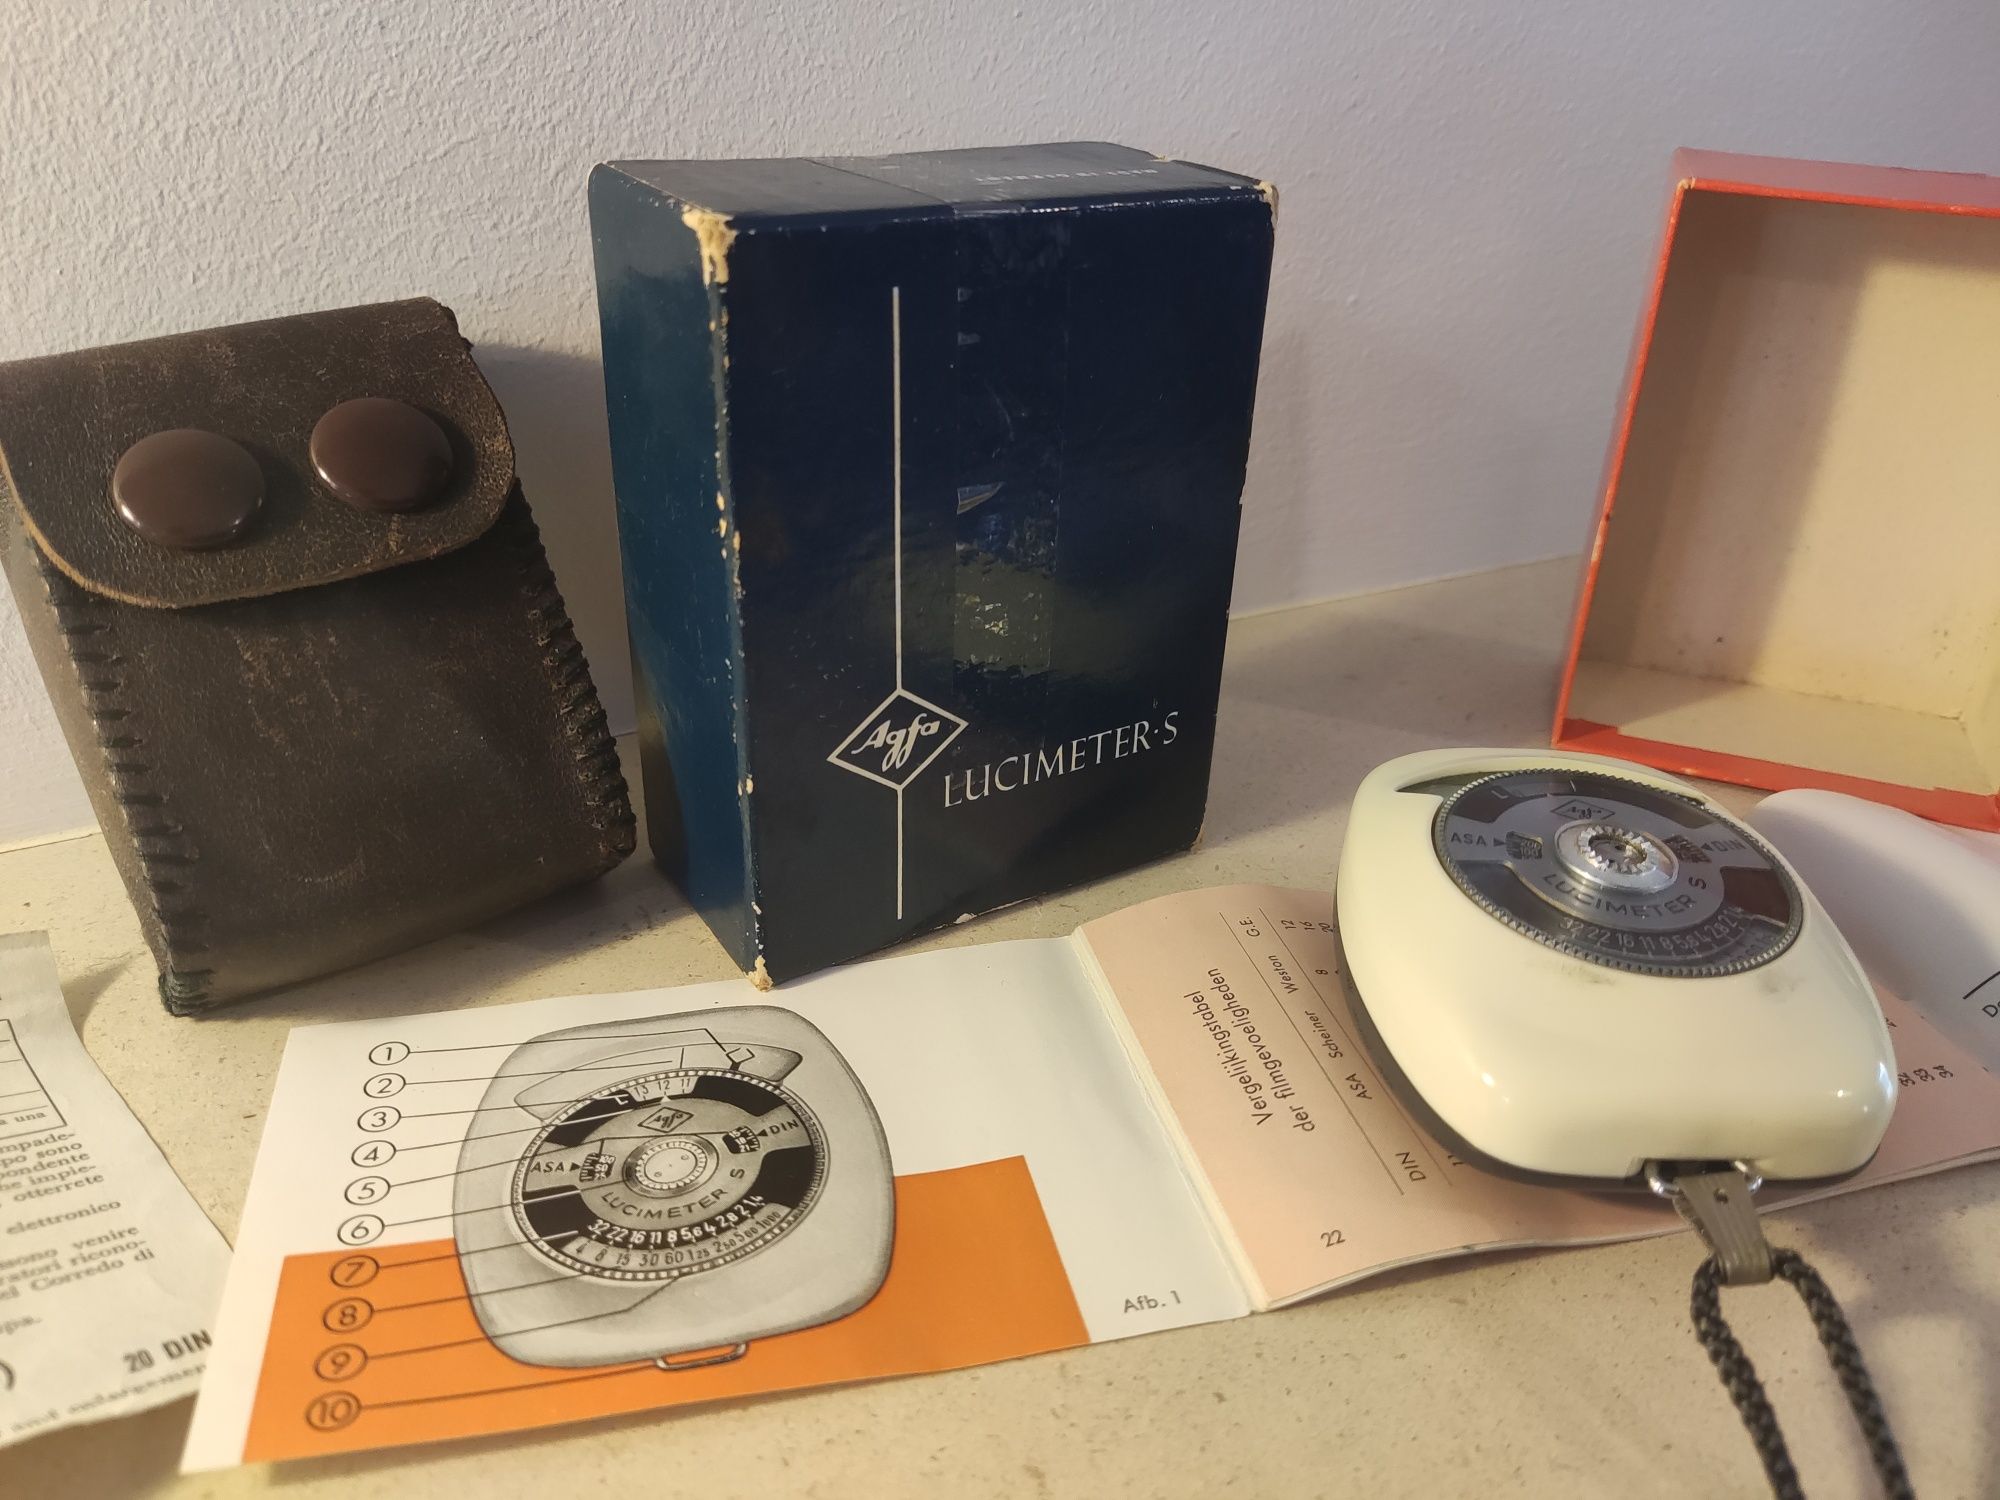 Fotómetro AGFA Lucimeter S antigo vintage (caixa original)